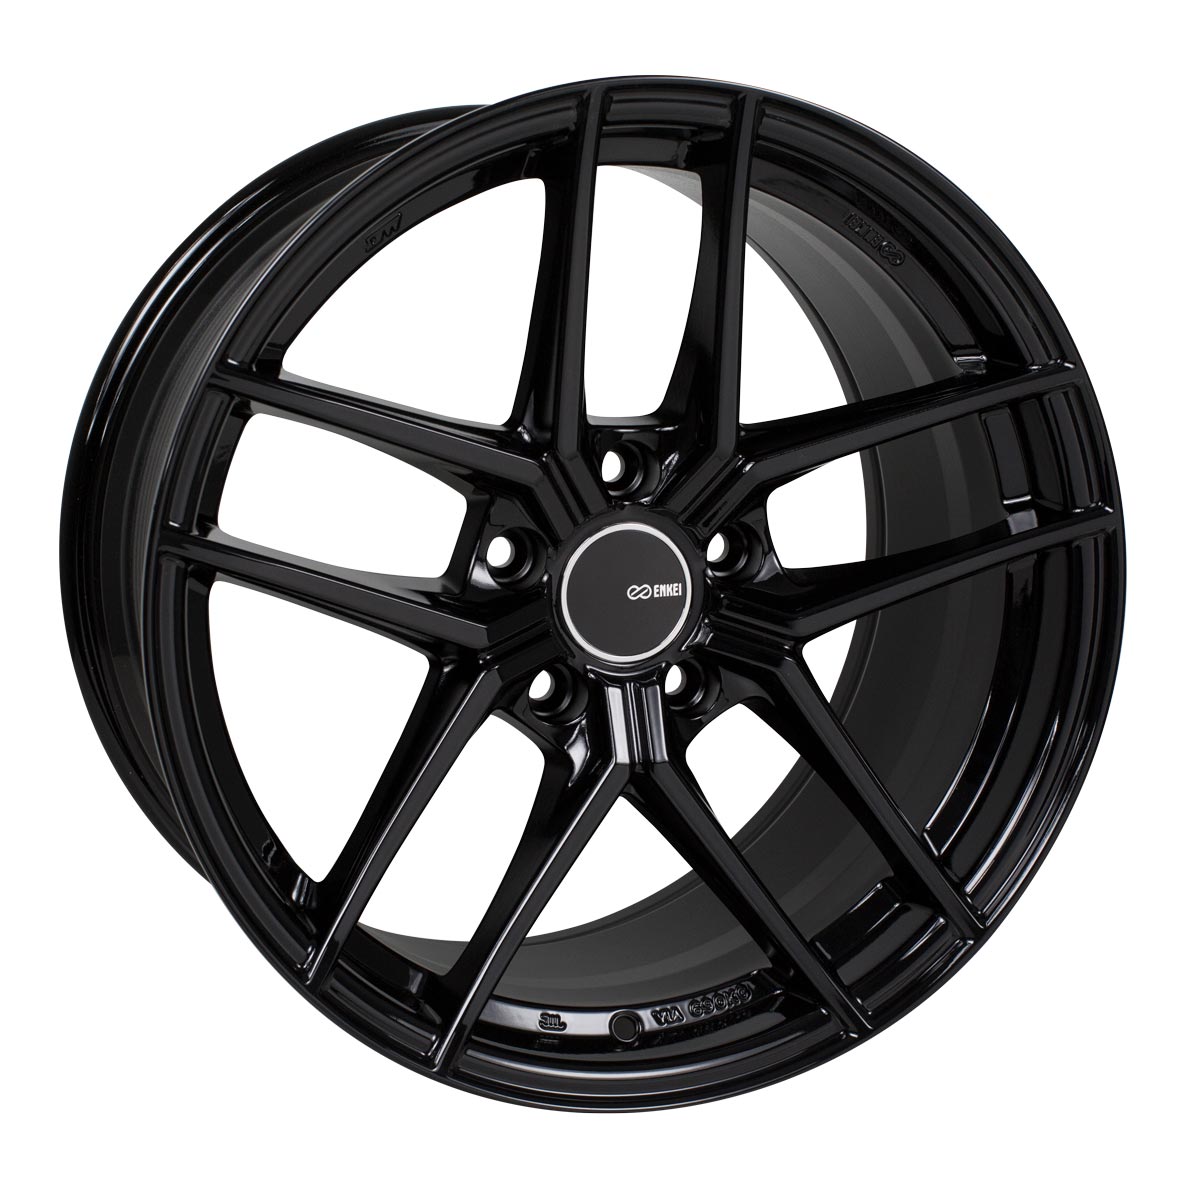 Enkei TY-5 Wheel Gloss Black 18x8.5 +45 5x100 498-885-8045BK